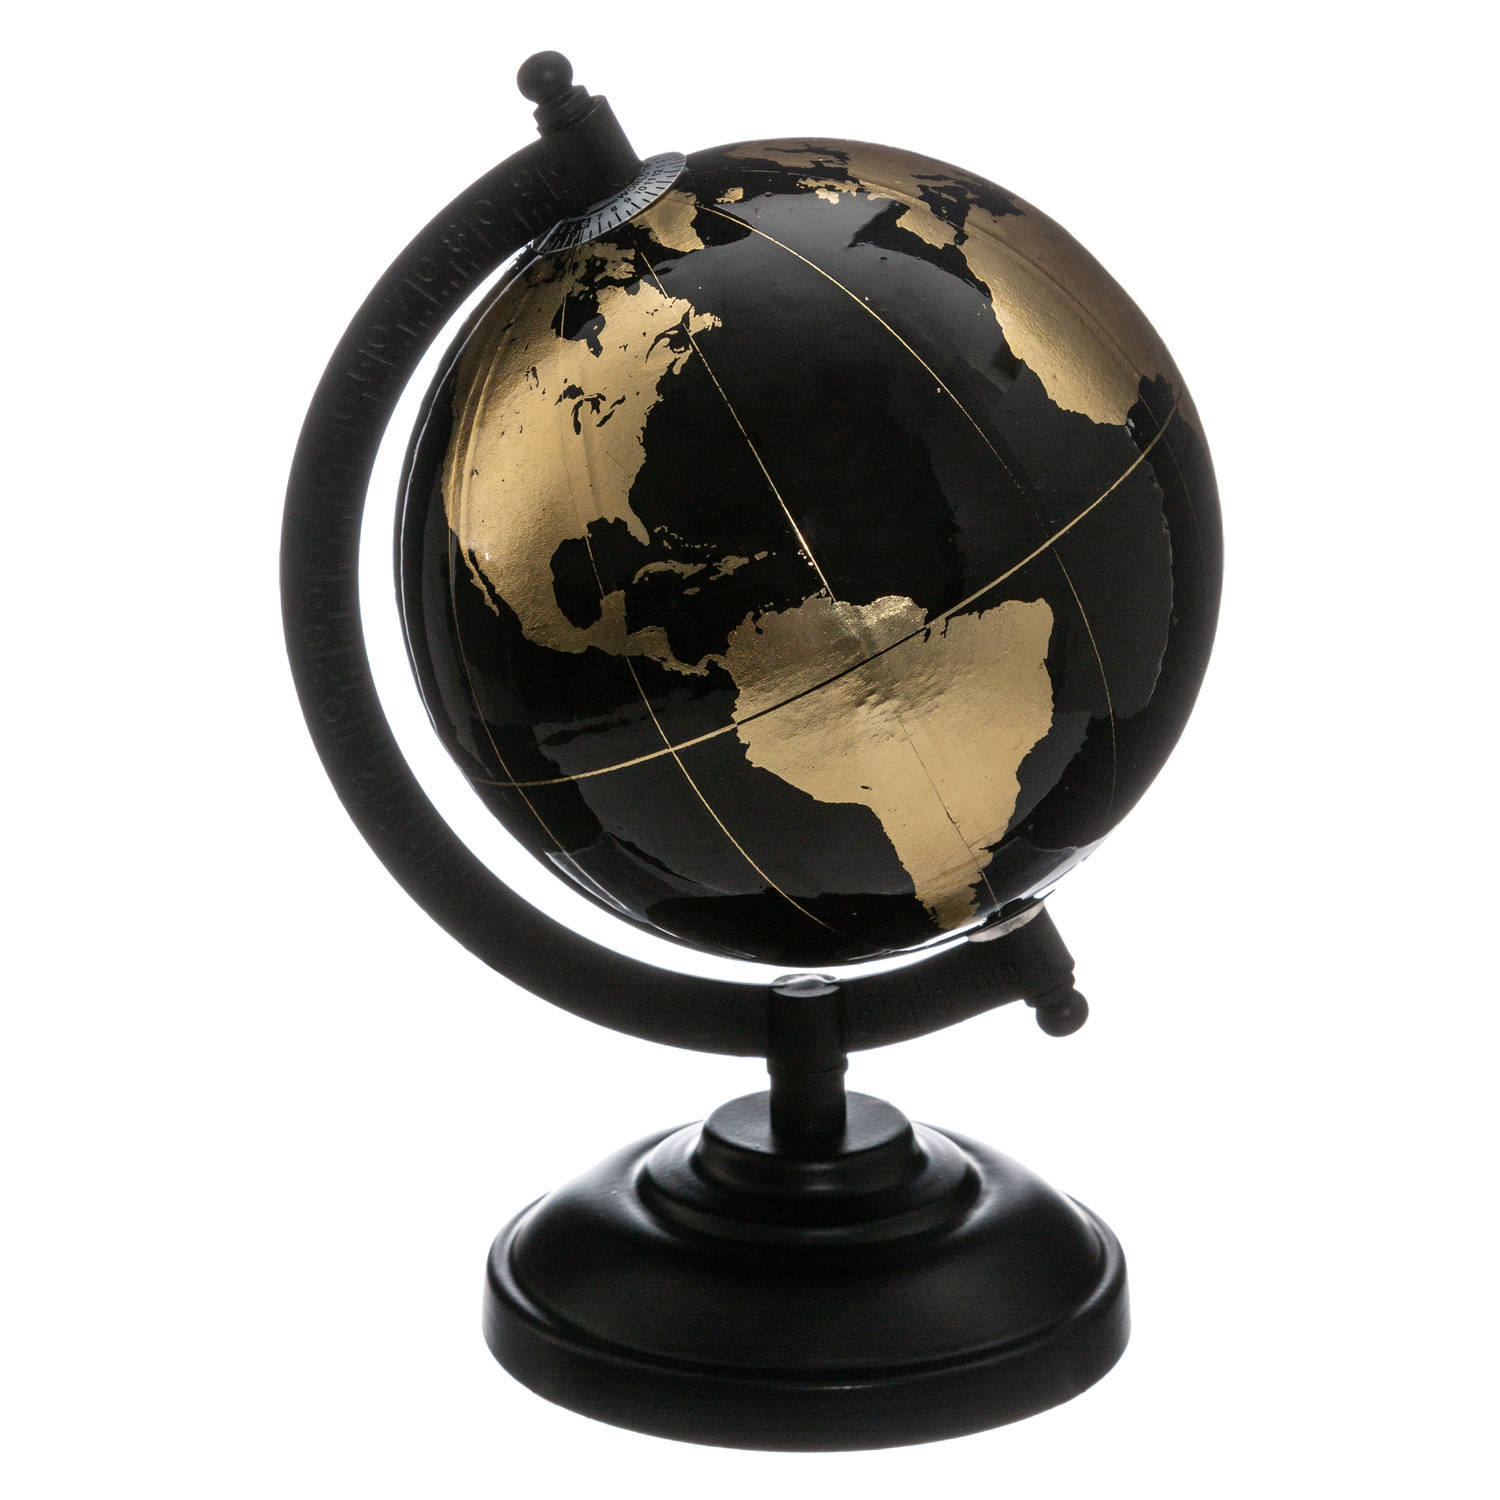 Decoratie wereldbol-globe zwart-goud op metalen voet D13 x H22 cm Wereldbollen